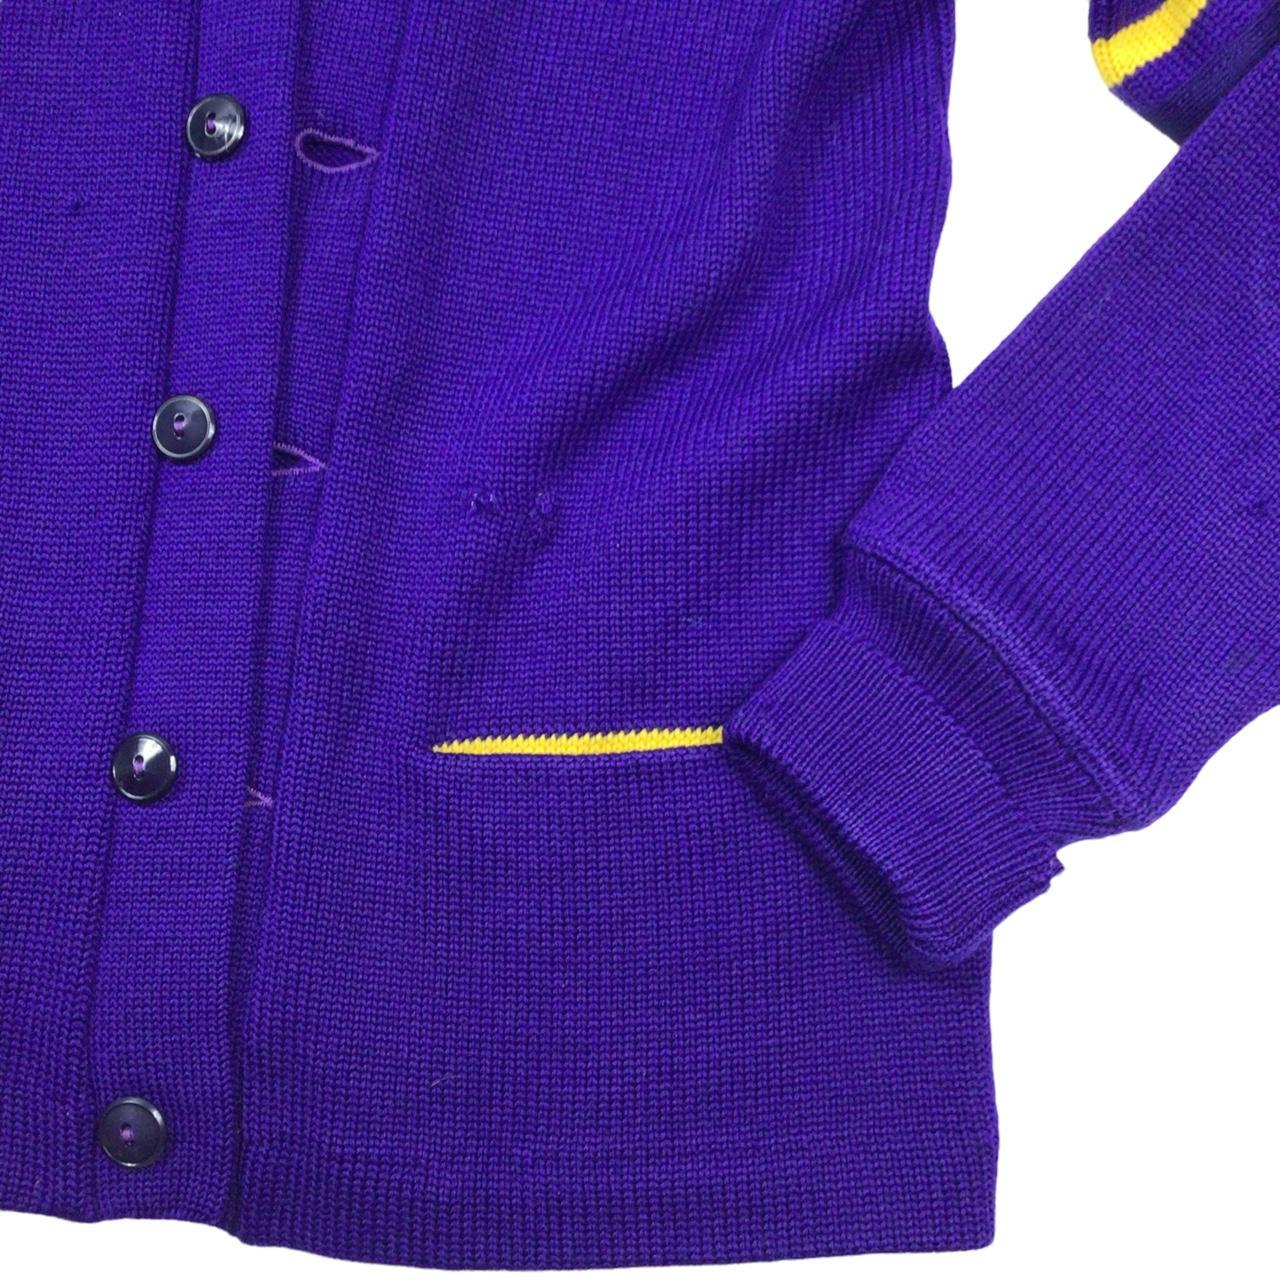 Vintage 1965 wool varsity letterman sweater. Made in... - Depop